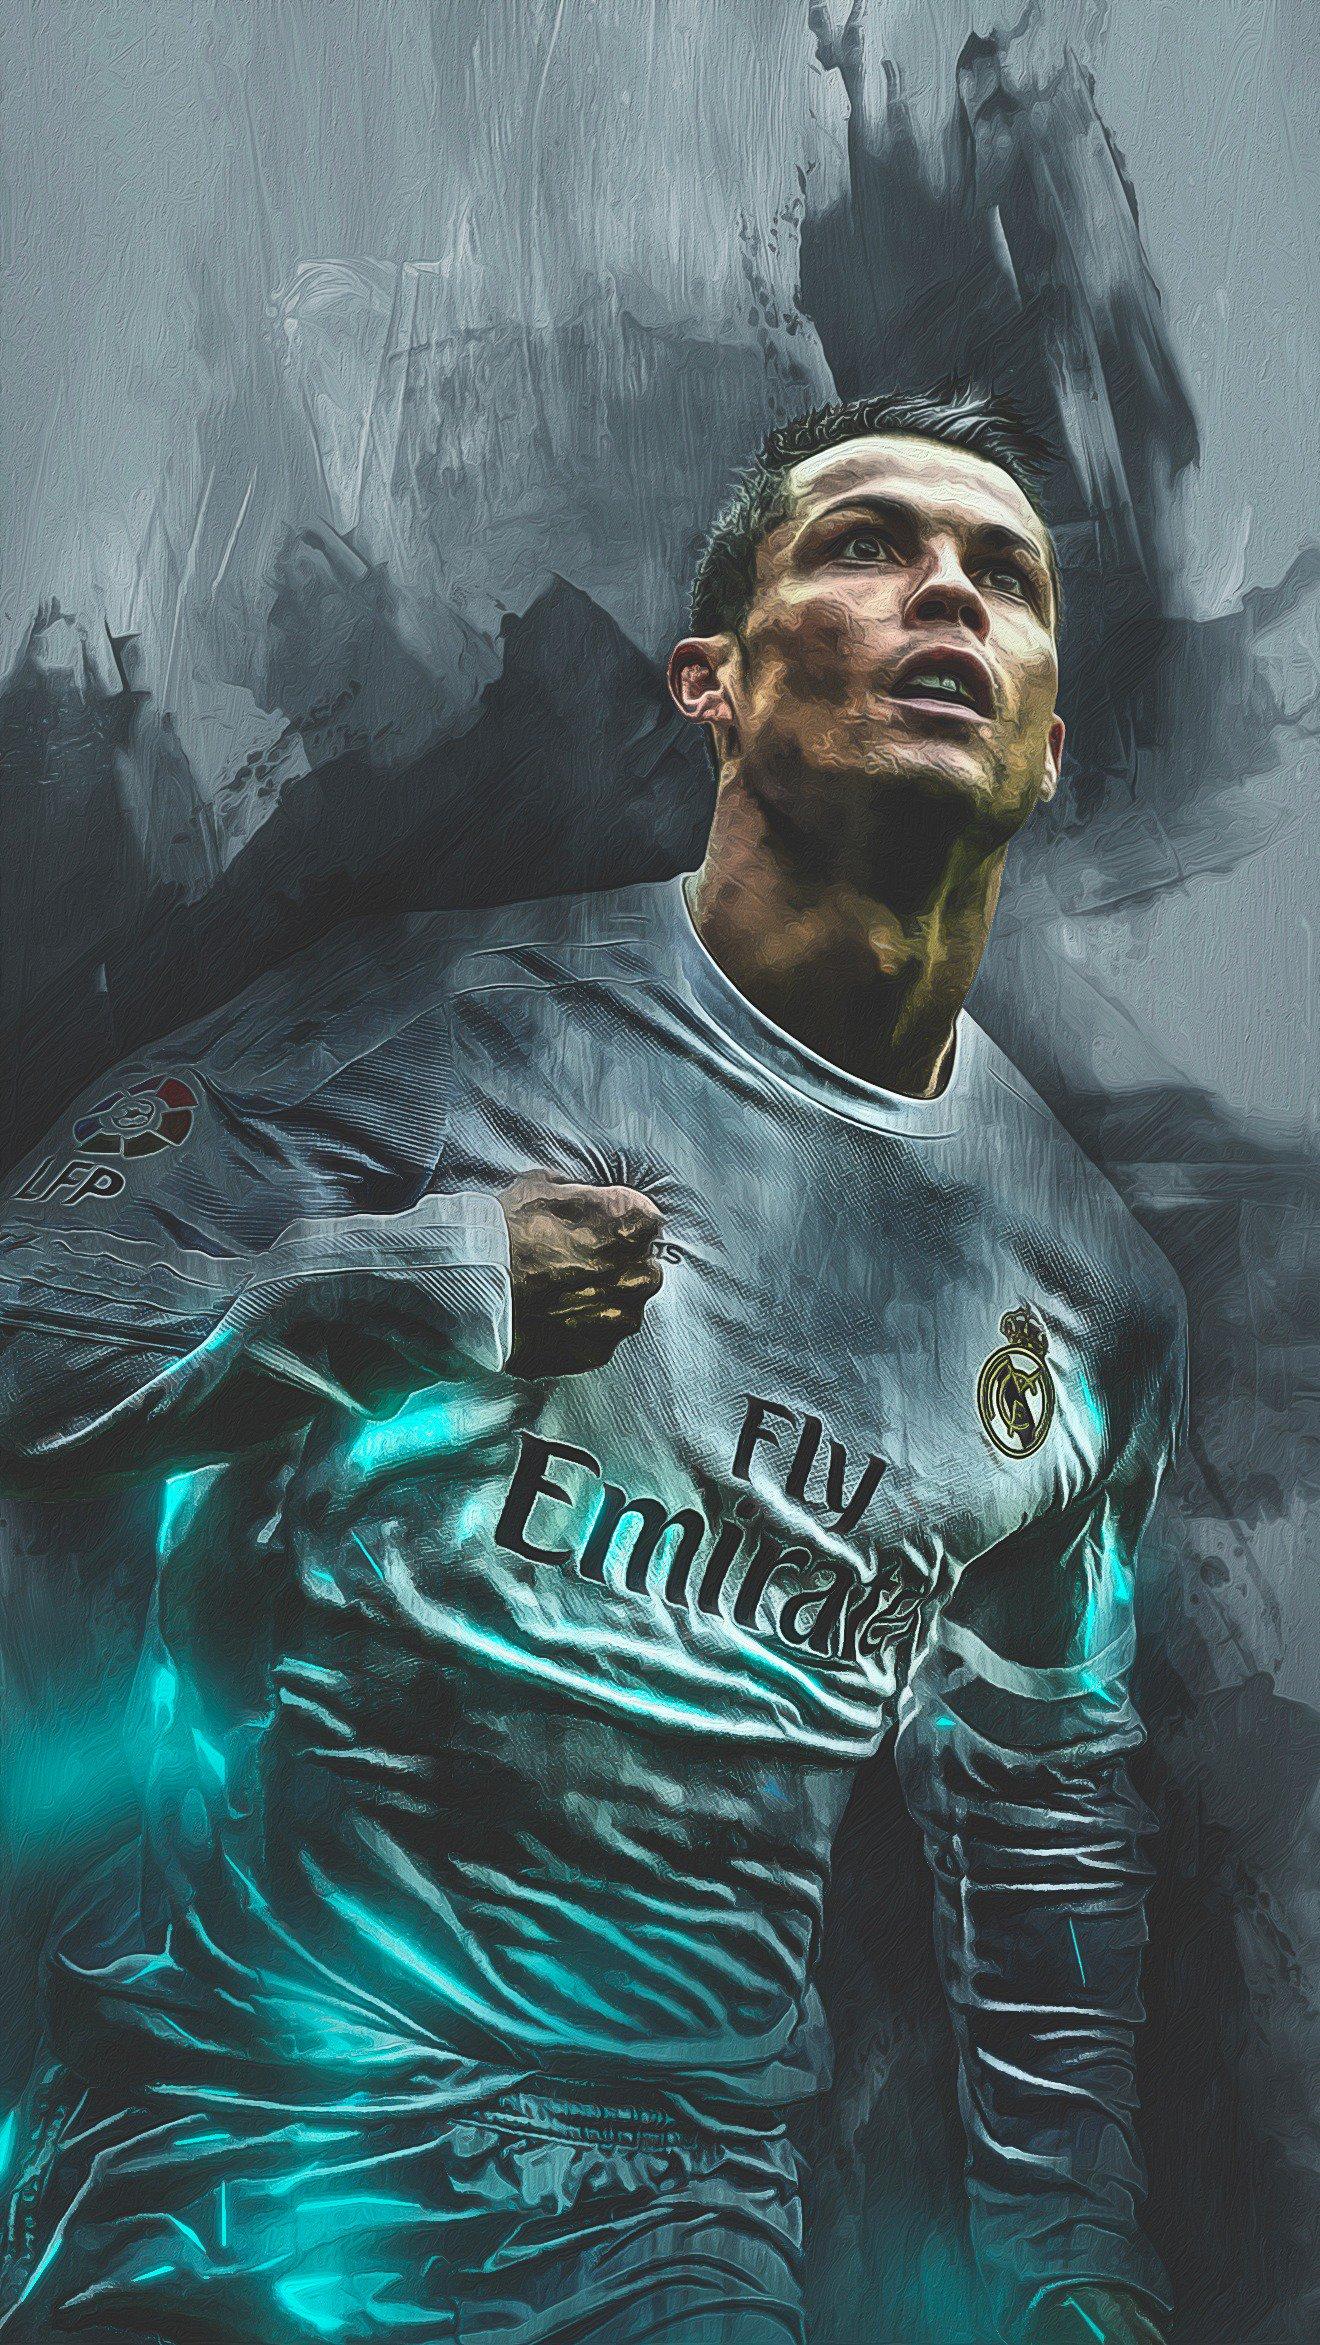 Fredrik on Cristiano Ronaldo mobile wallpaper